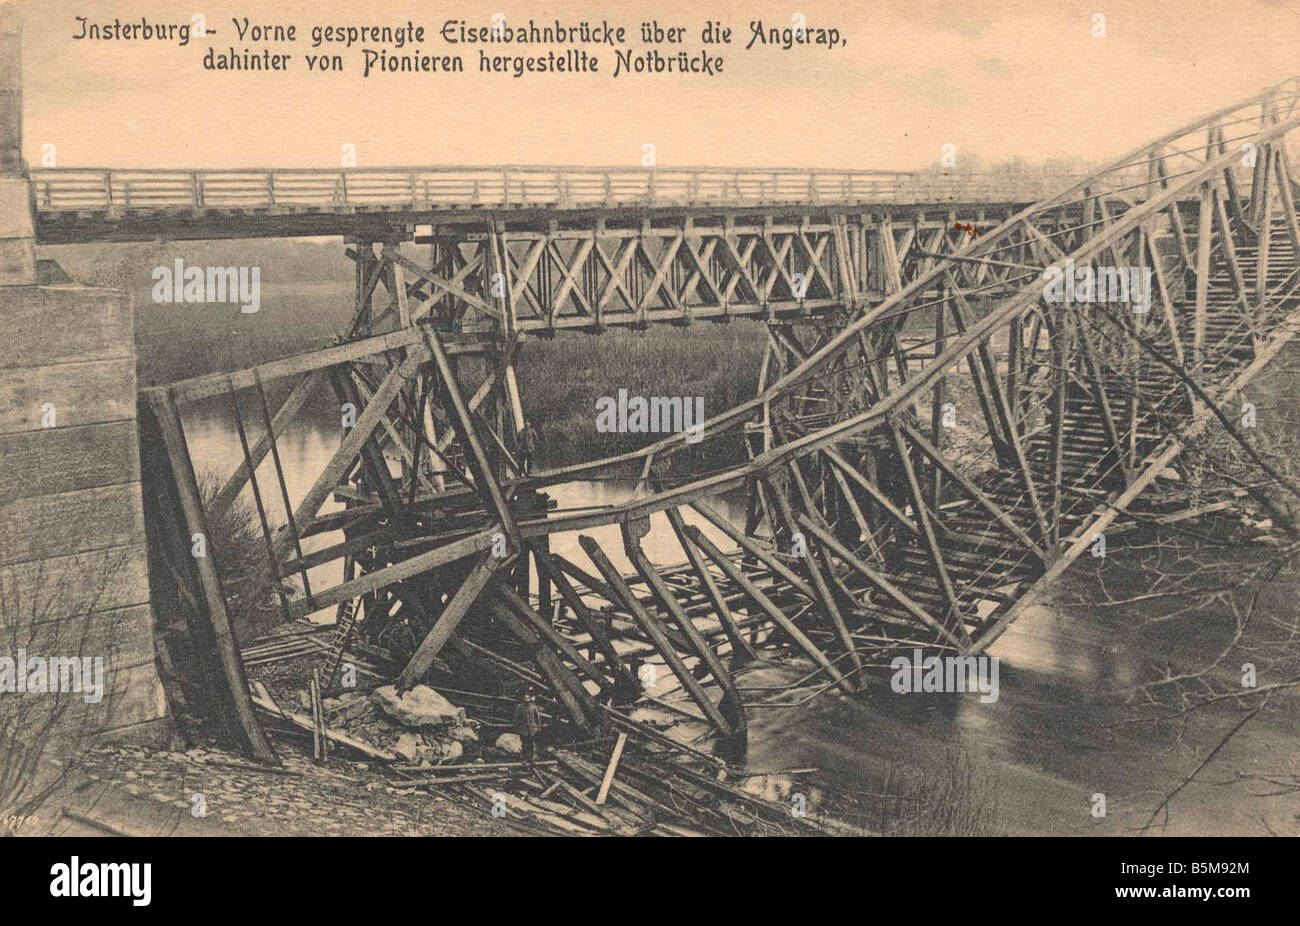 2 G55 O1 1914 17 distrutto ponte sul fiume Angrapa WWI Storia della prima guerra mondiale sul fronte orientale di Interburg Vorne gesprengte Eisen bahnbruecke Foto Stock